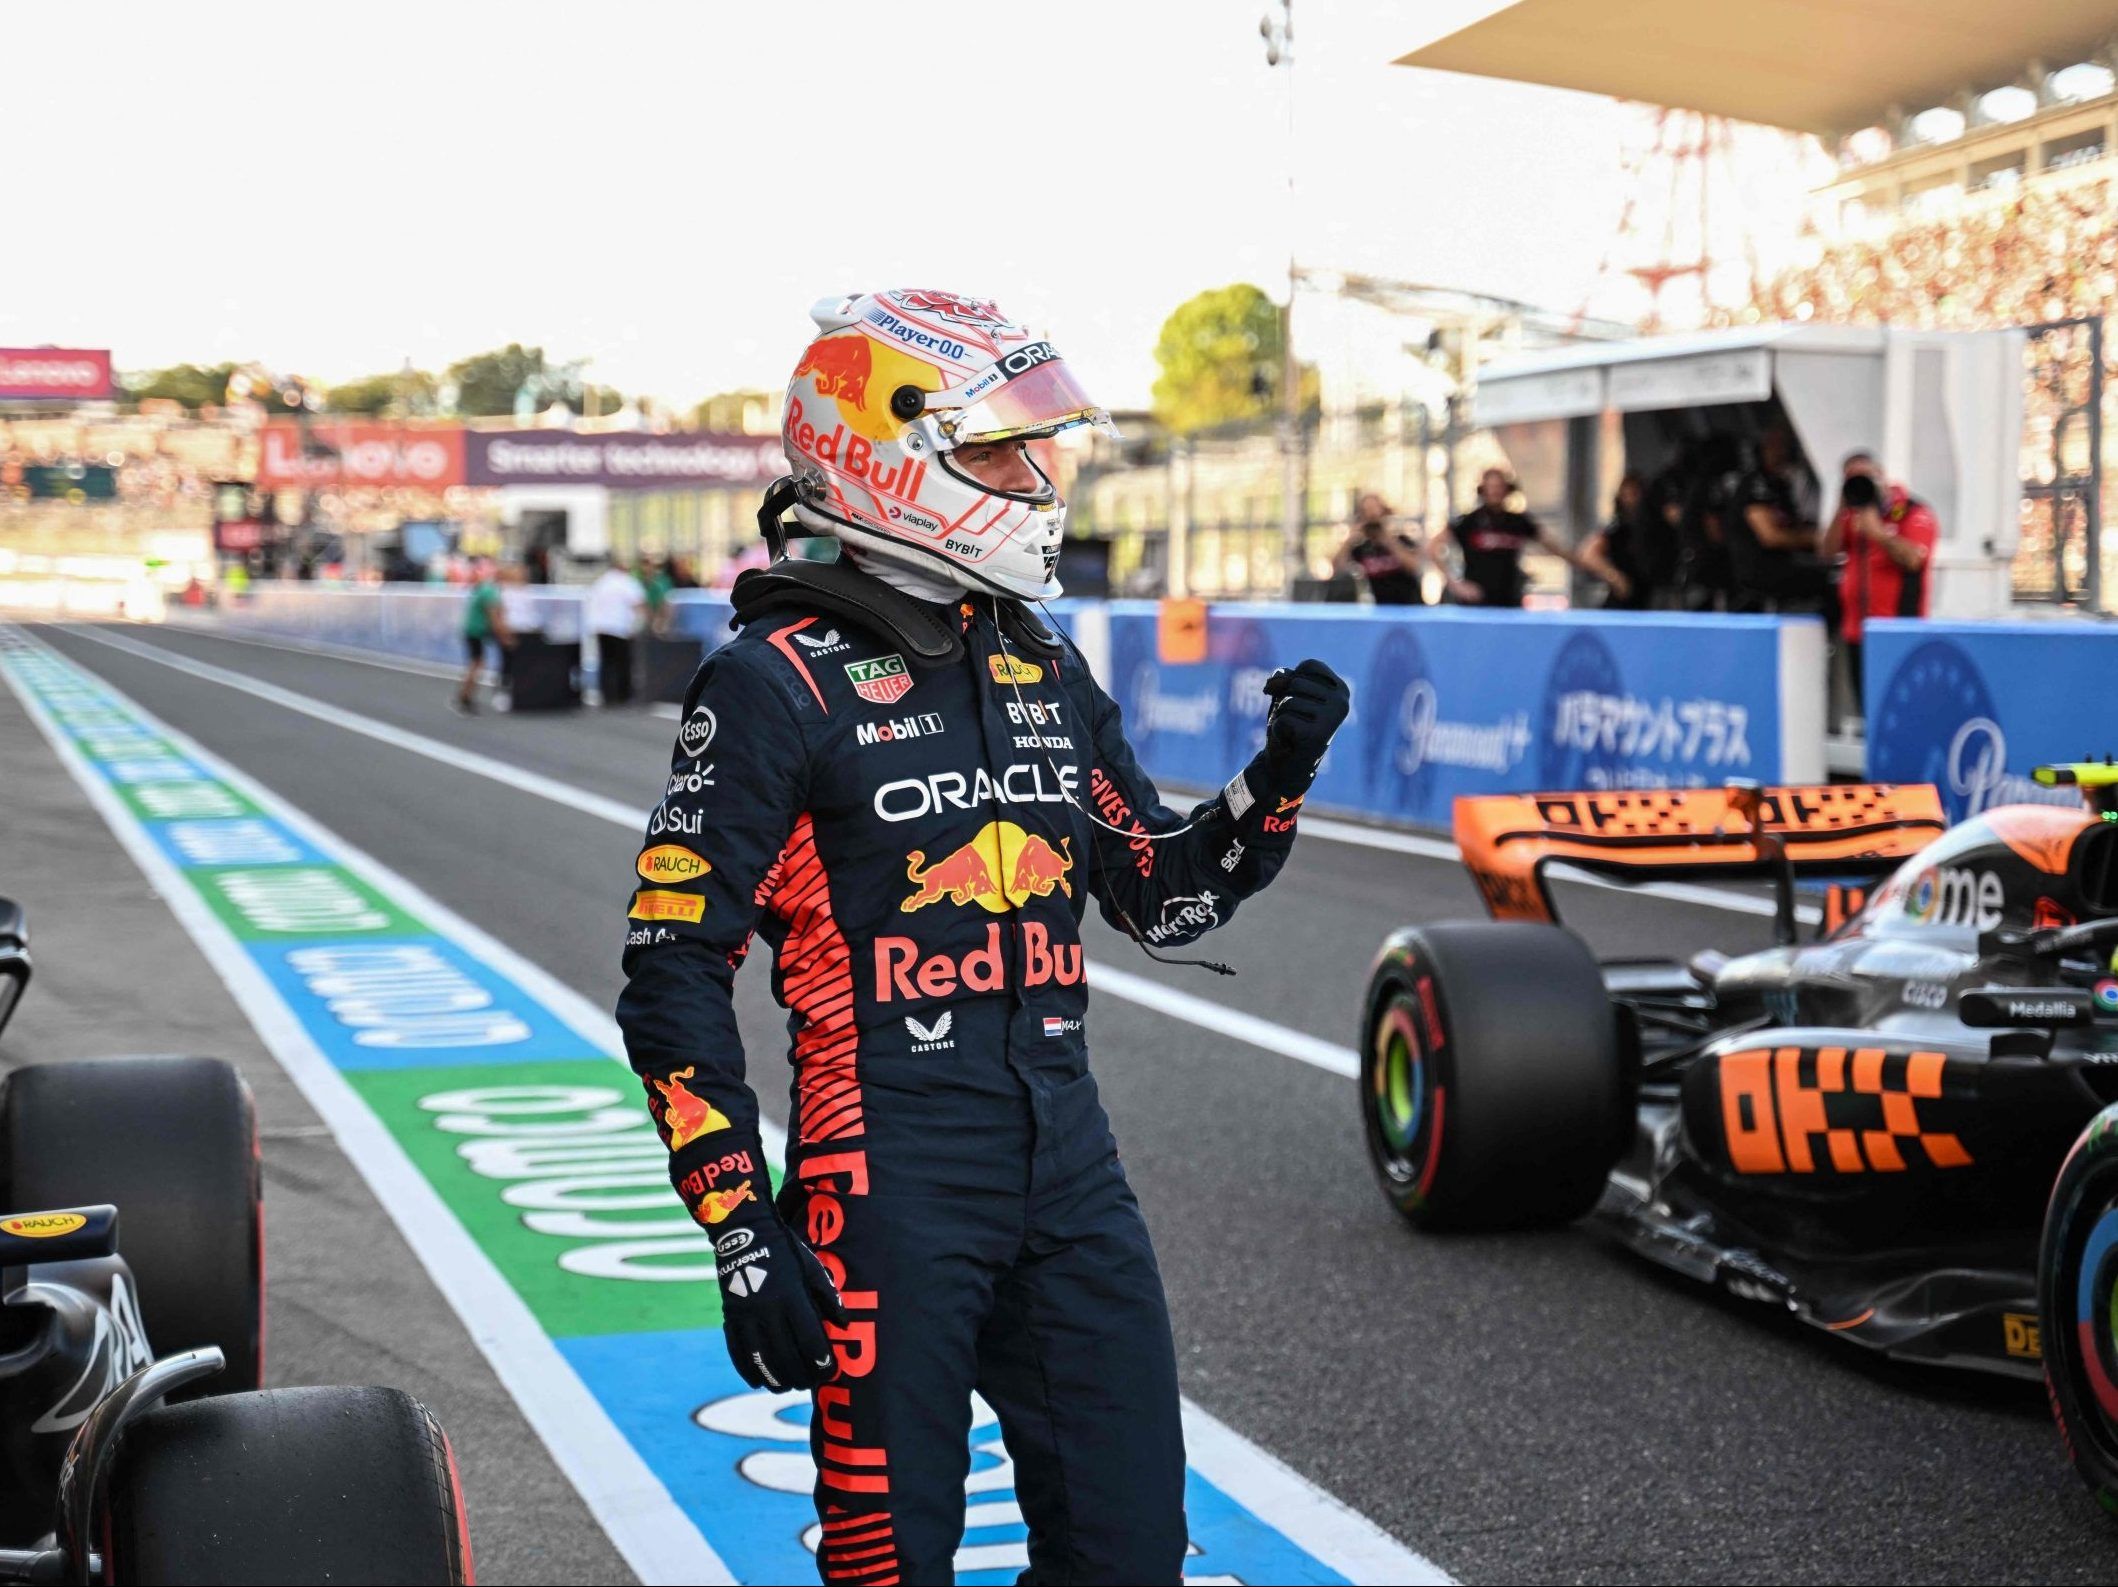 Formule 1-leider Verstappen keert terug naar zijn dominante vorm door pole position te pakken tijdens de Grand Prix van Japan